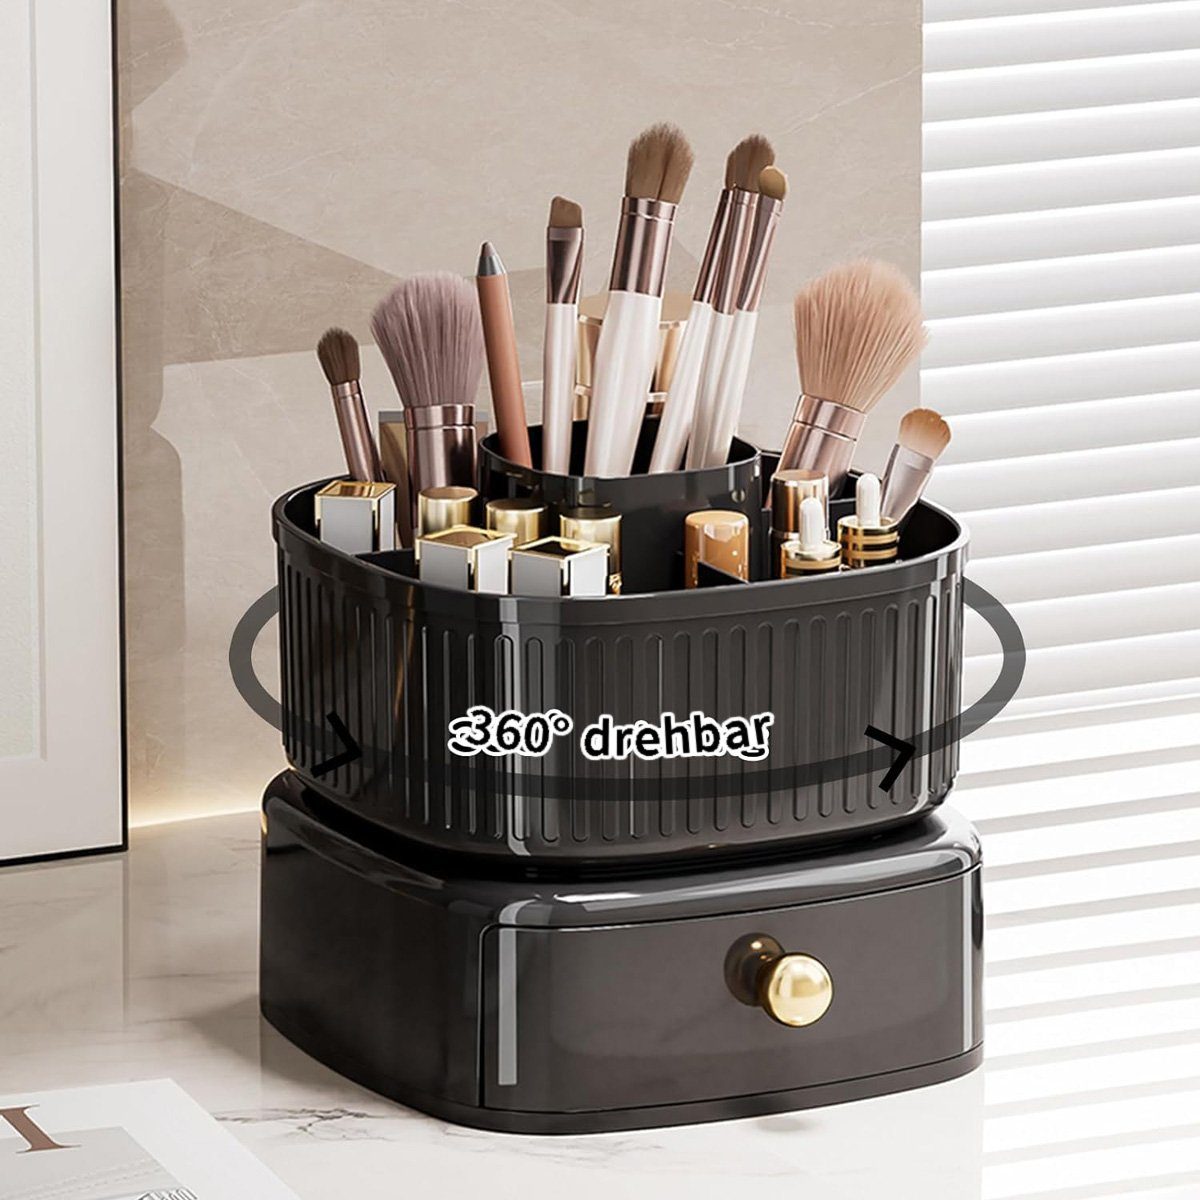 götäzer Make-Up Organizer Leichte Luxus-Kosmetik-Aufbewahrungsbox, 360° drehbare Bürsten-Aufbewahrungsbox mit Schublade Schwarz